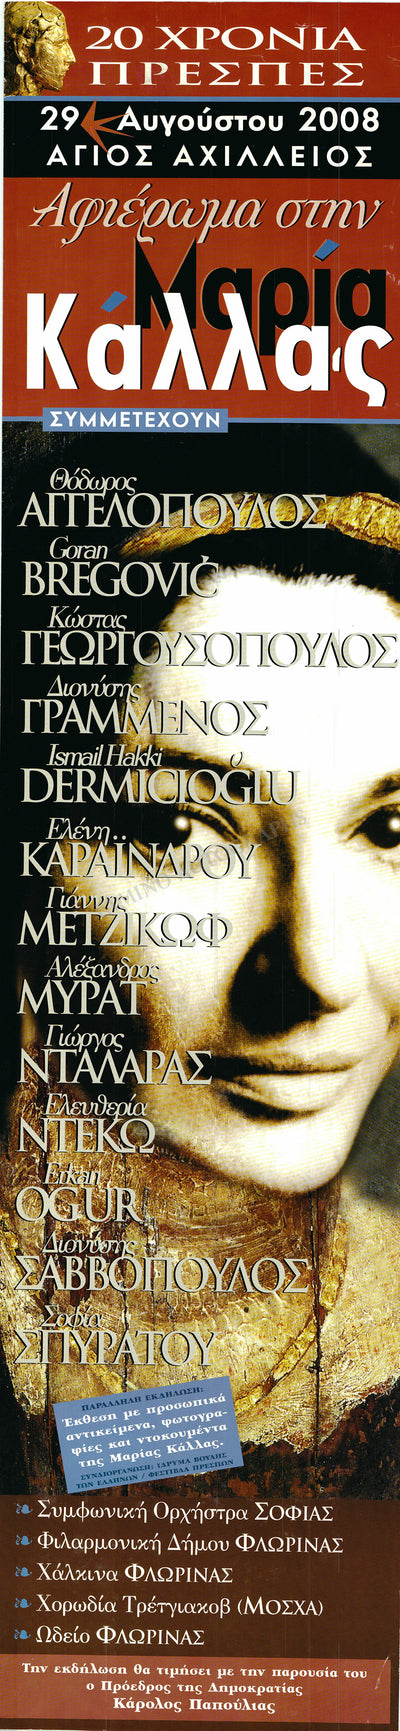 Callas, Maria - Exhibit Greece 2008 Poster